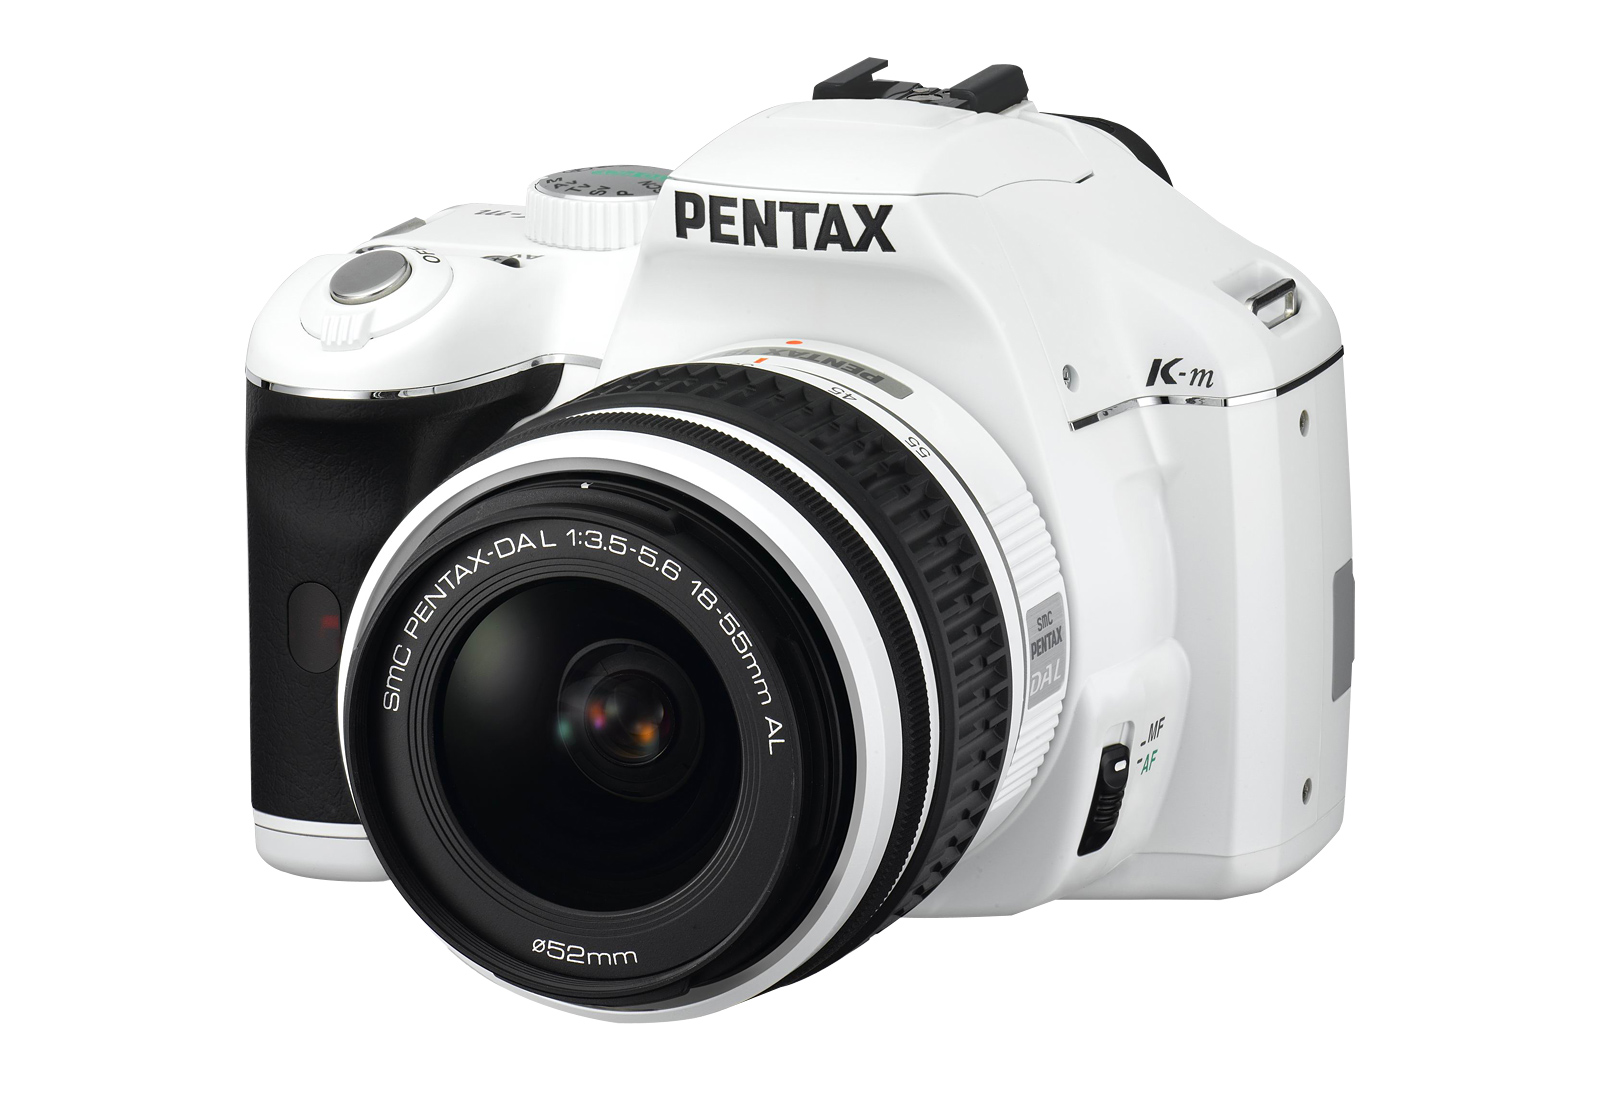 使いやすいエントリークラスのデジタル一眼レフカメラ「PENTAX K-m」 ─ホワイトカラーの限定モデルを新発売─｜RICOH IMAGING